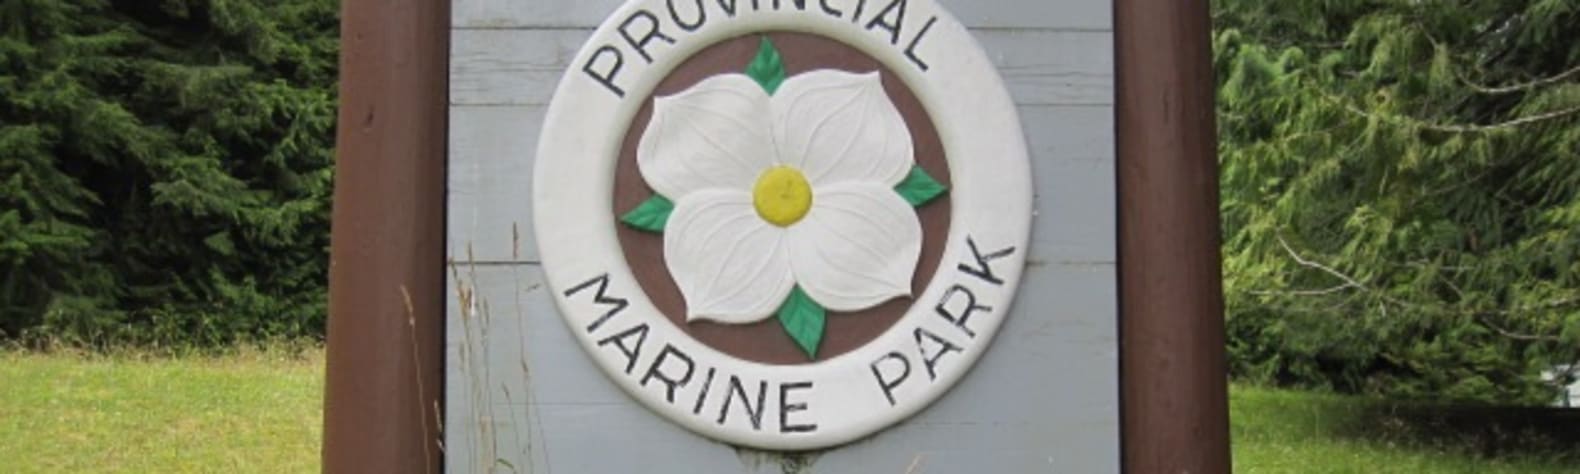 Echo Bay Marine Provincial Park